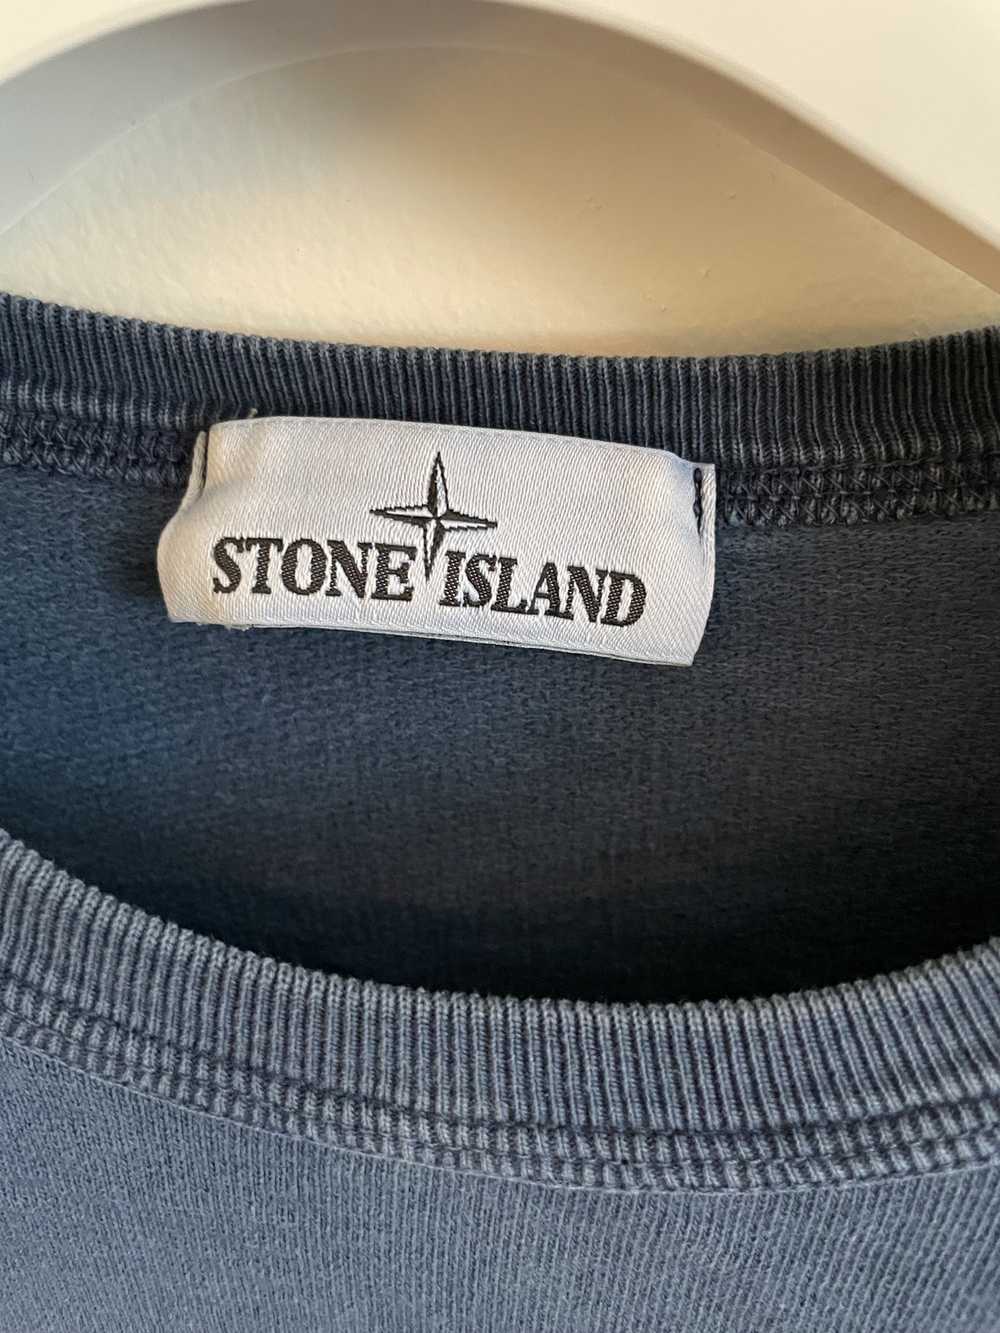 Stone Island Stone Island Long Sleeve Crewneck - image 4